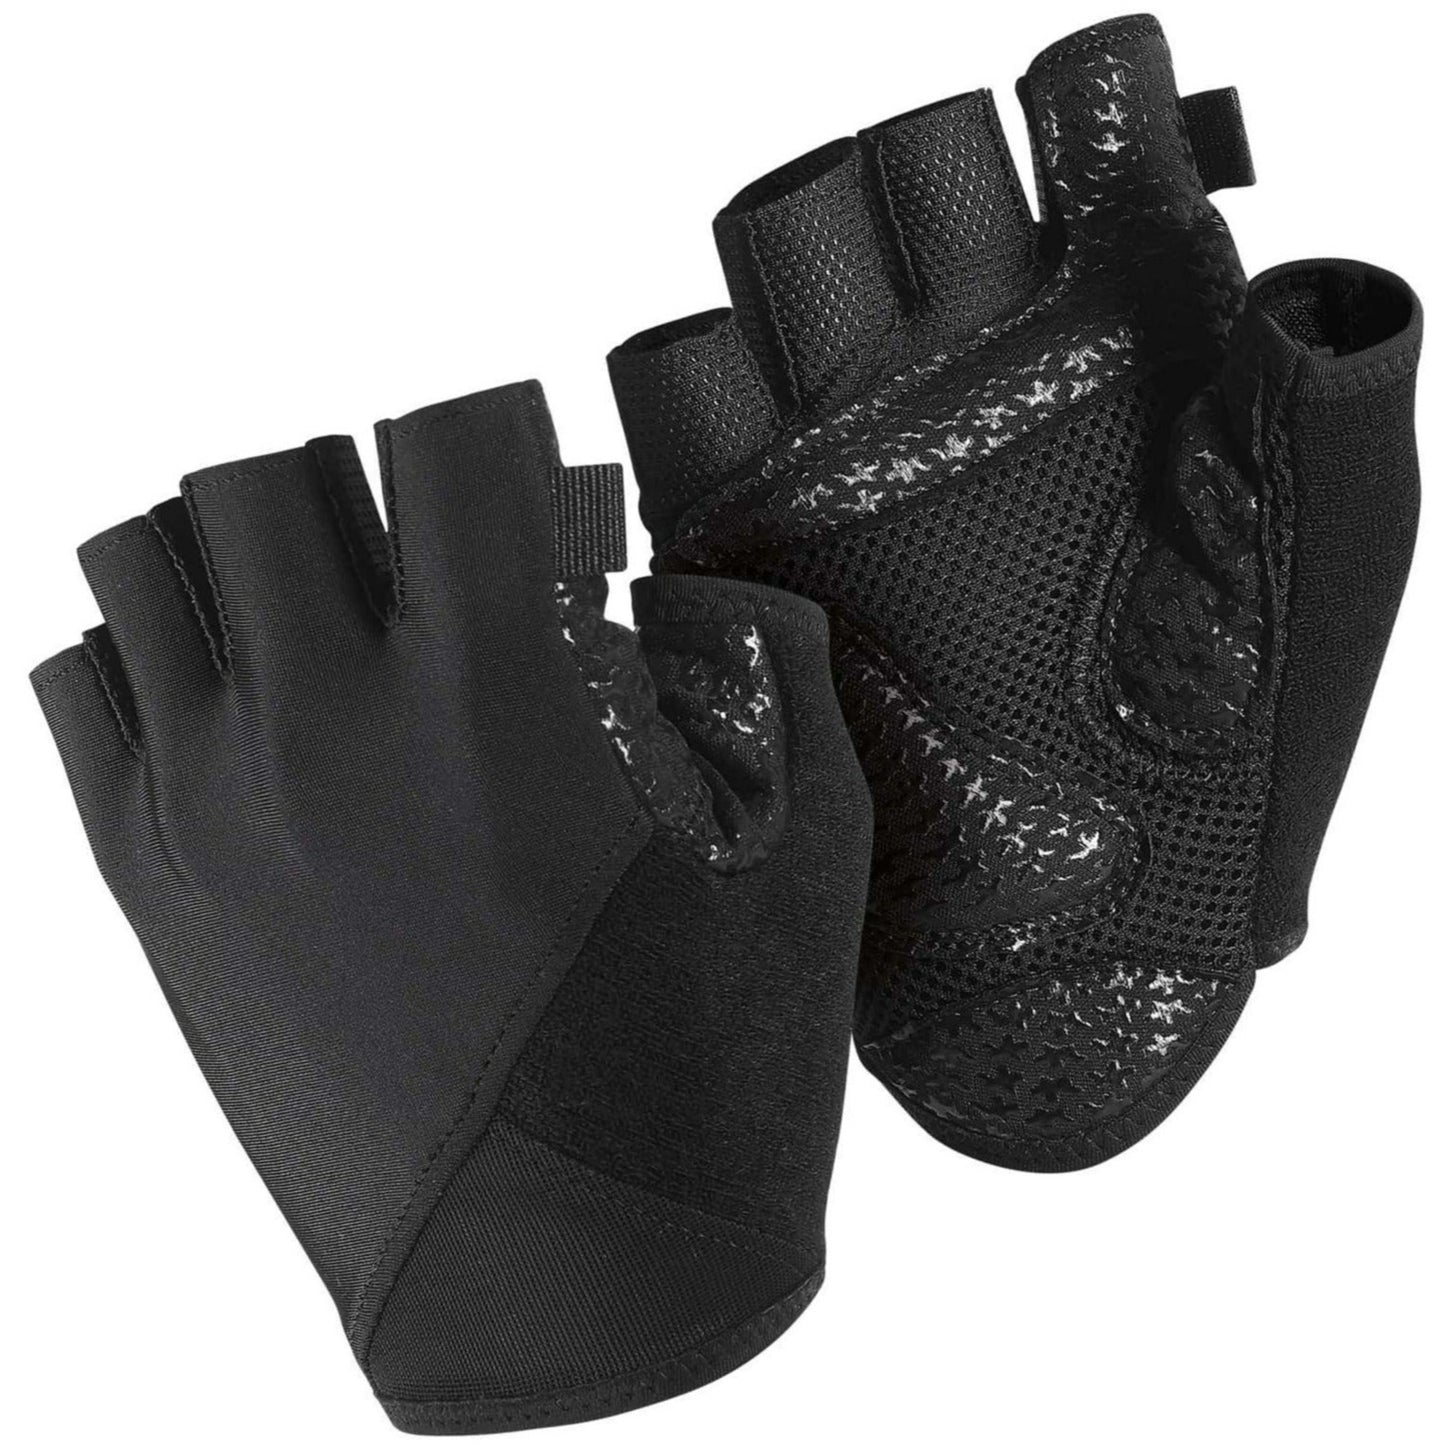 Assos S7 Summer Glove